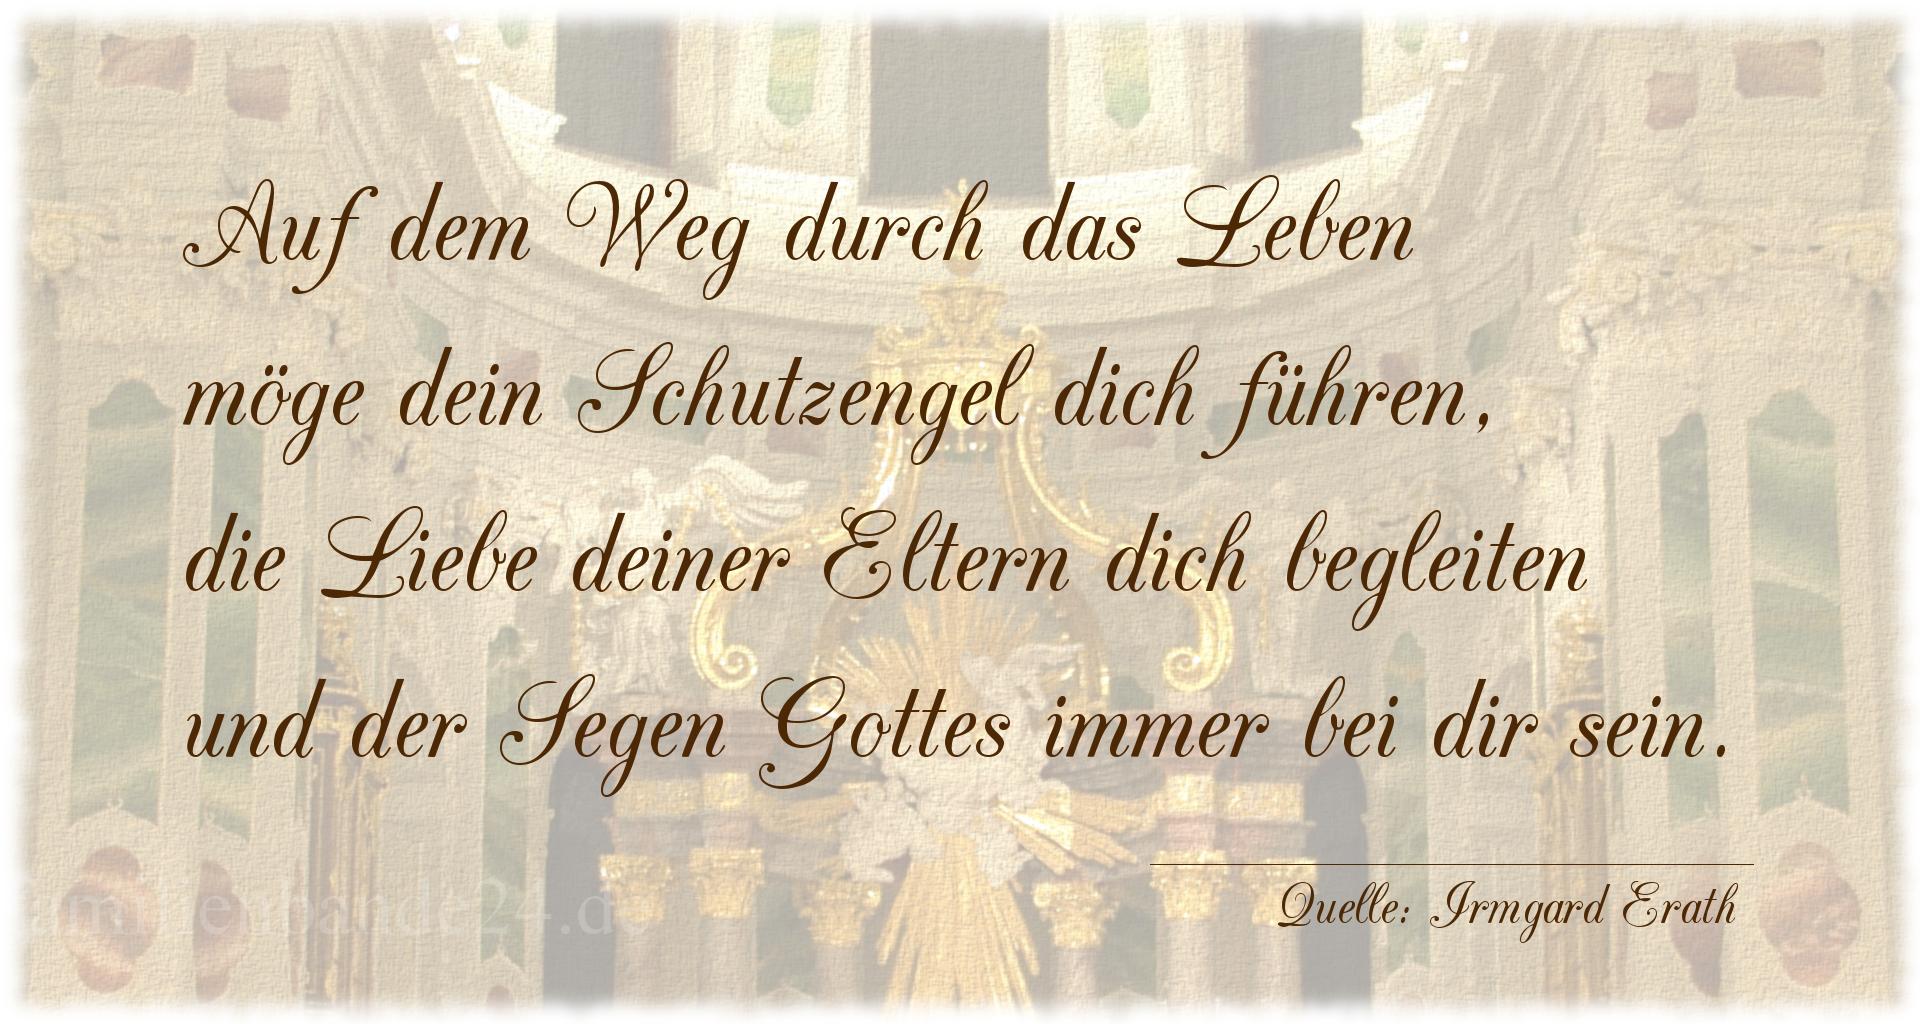 Taufspruch Nr. 1893 (von Irmgard Erath): Auf dem Weg durch das Leben
möge dein Schutzengel dich f [...]